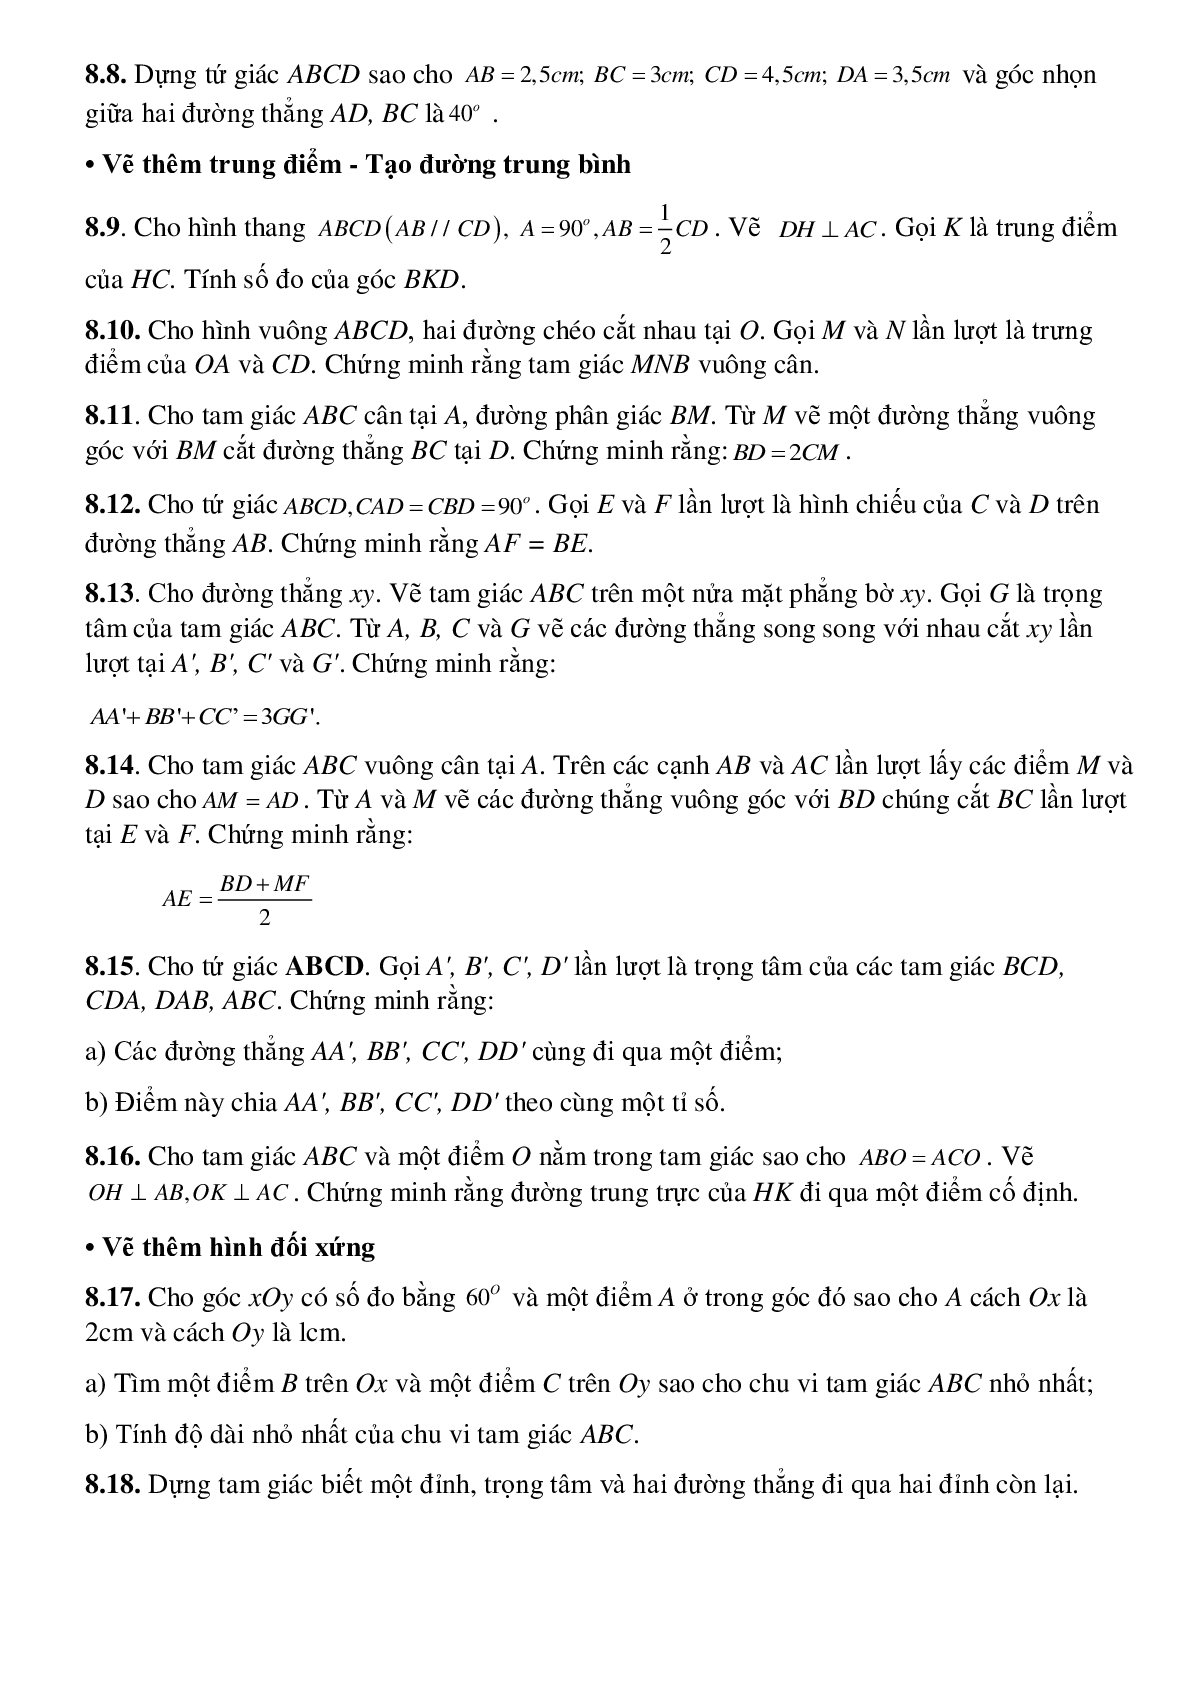 Hình phụ để giải toán trong chương tứ giác (trang 5)